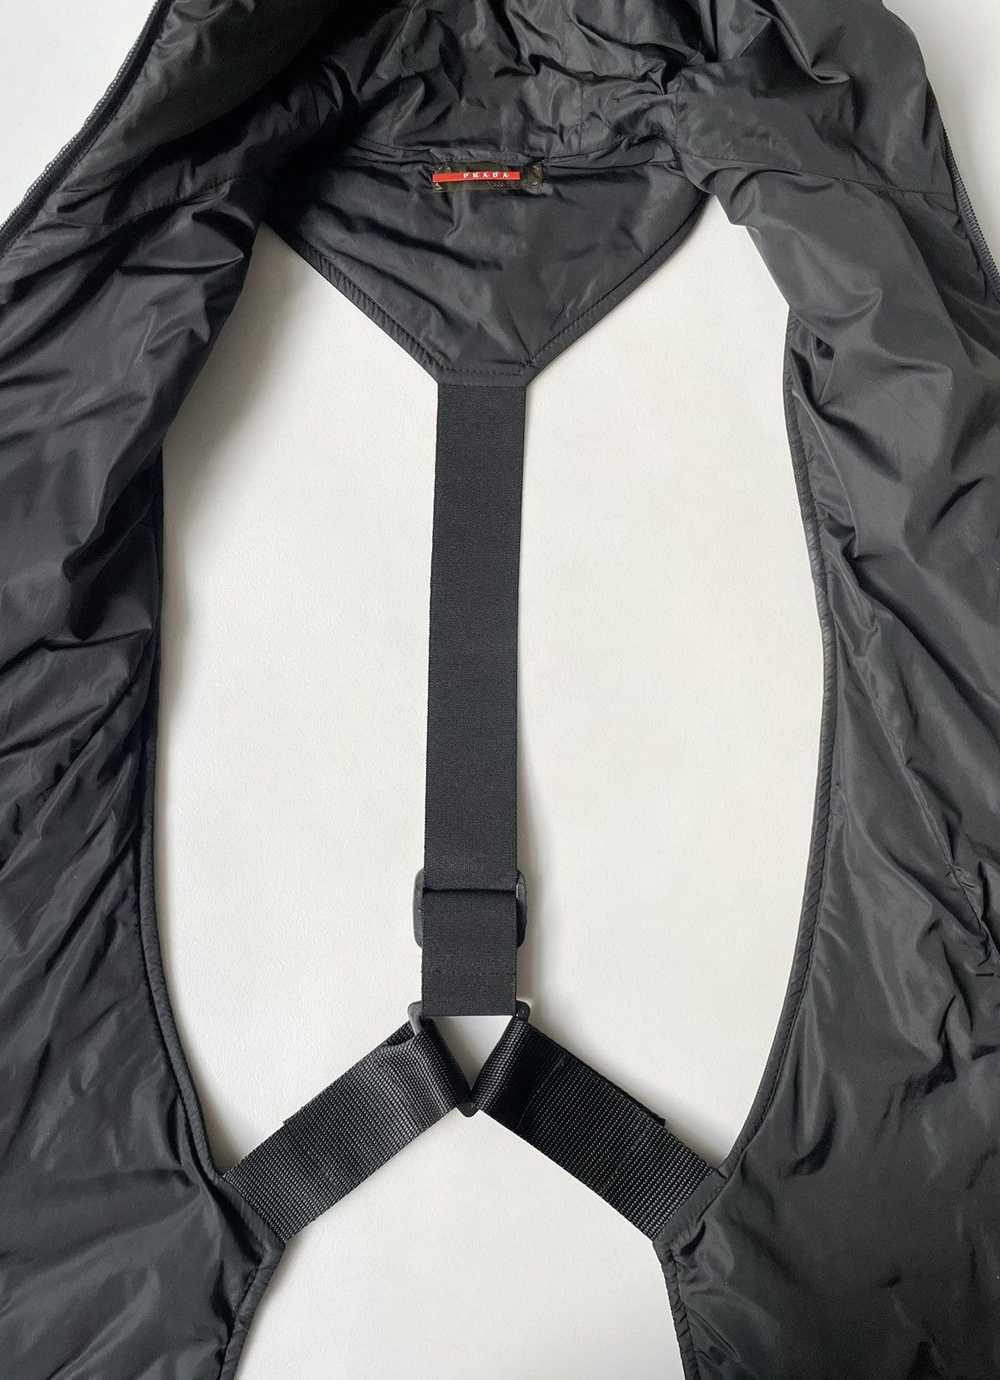 Prada A/W 1999 Balaclava Harness Vest - image 10